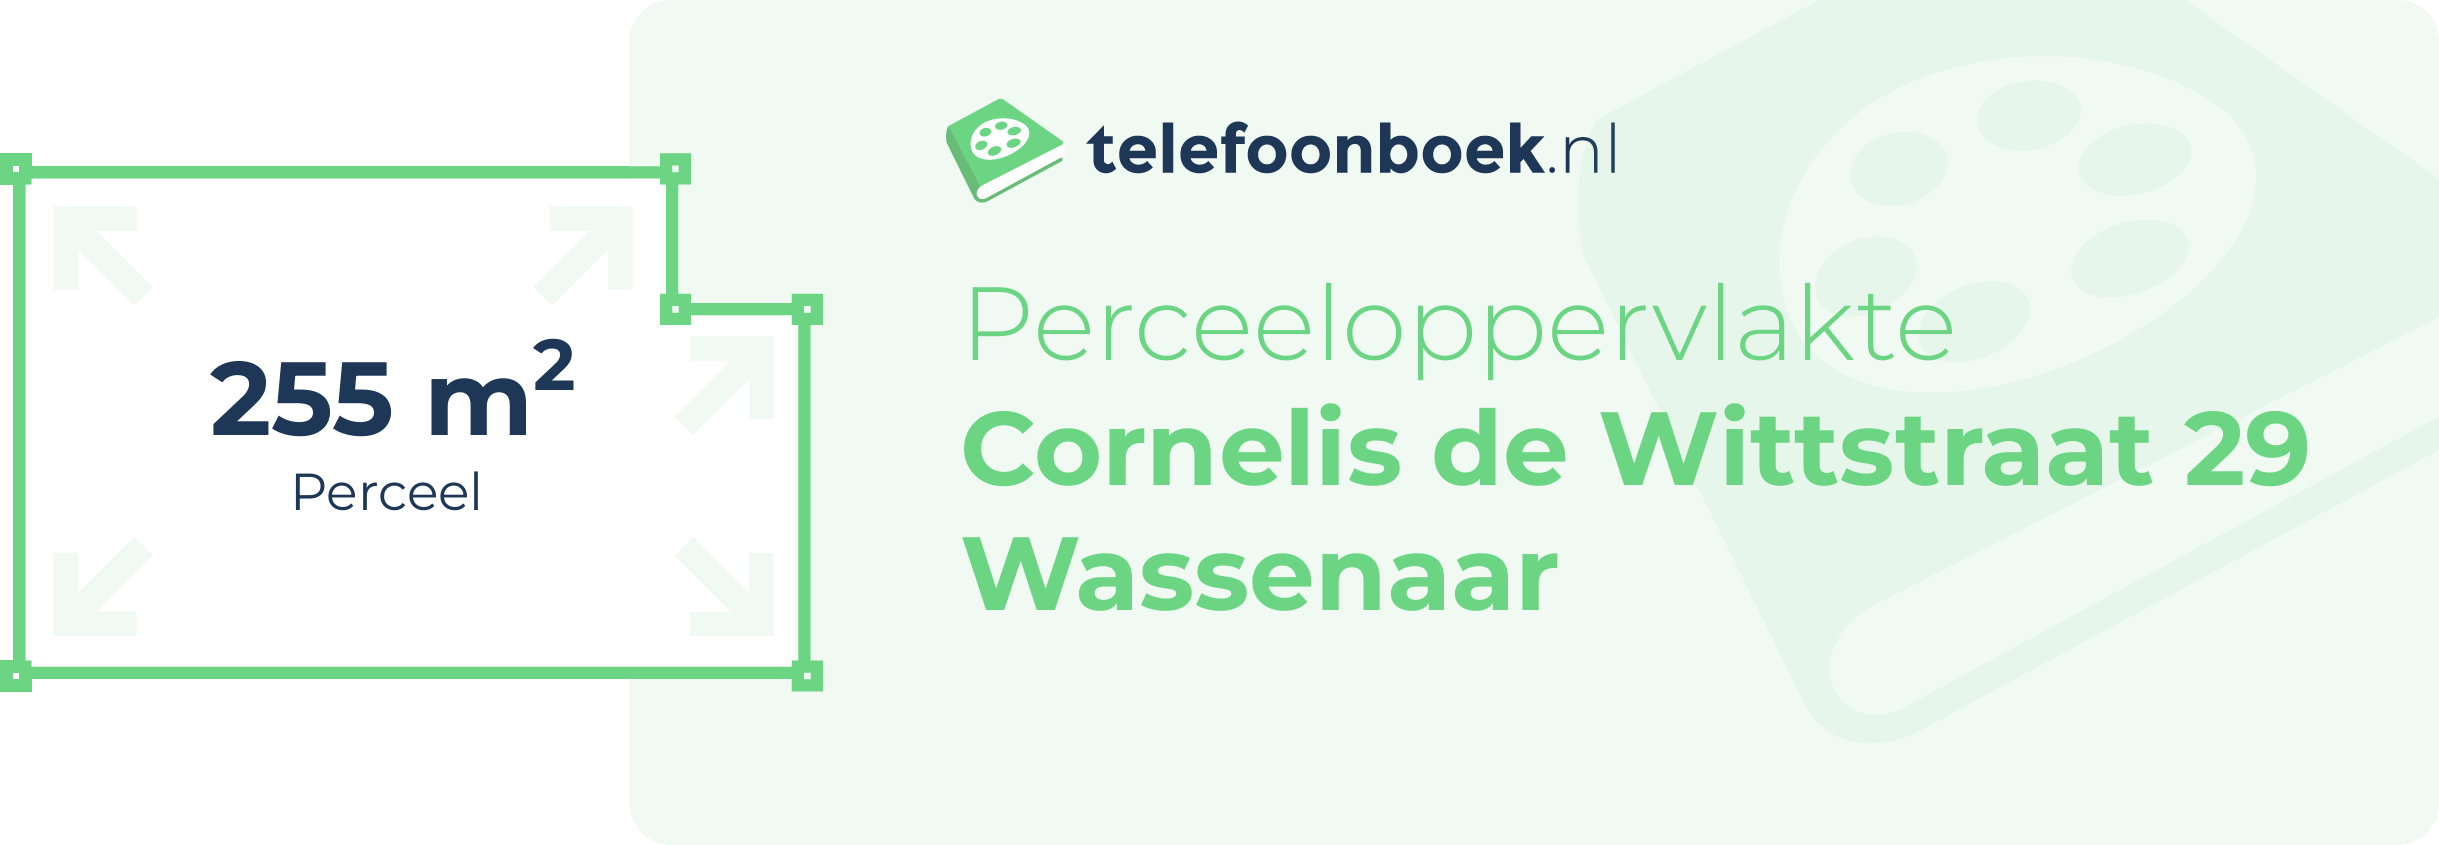 Perceeloppervlakte Cornelis De Wittstraat 29 Wassenaar